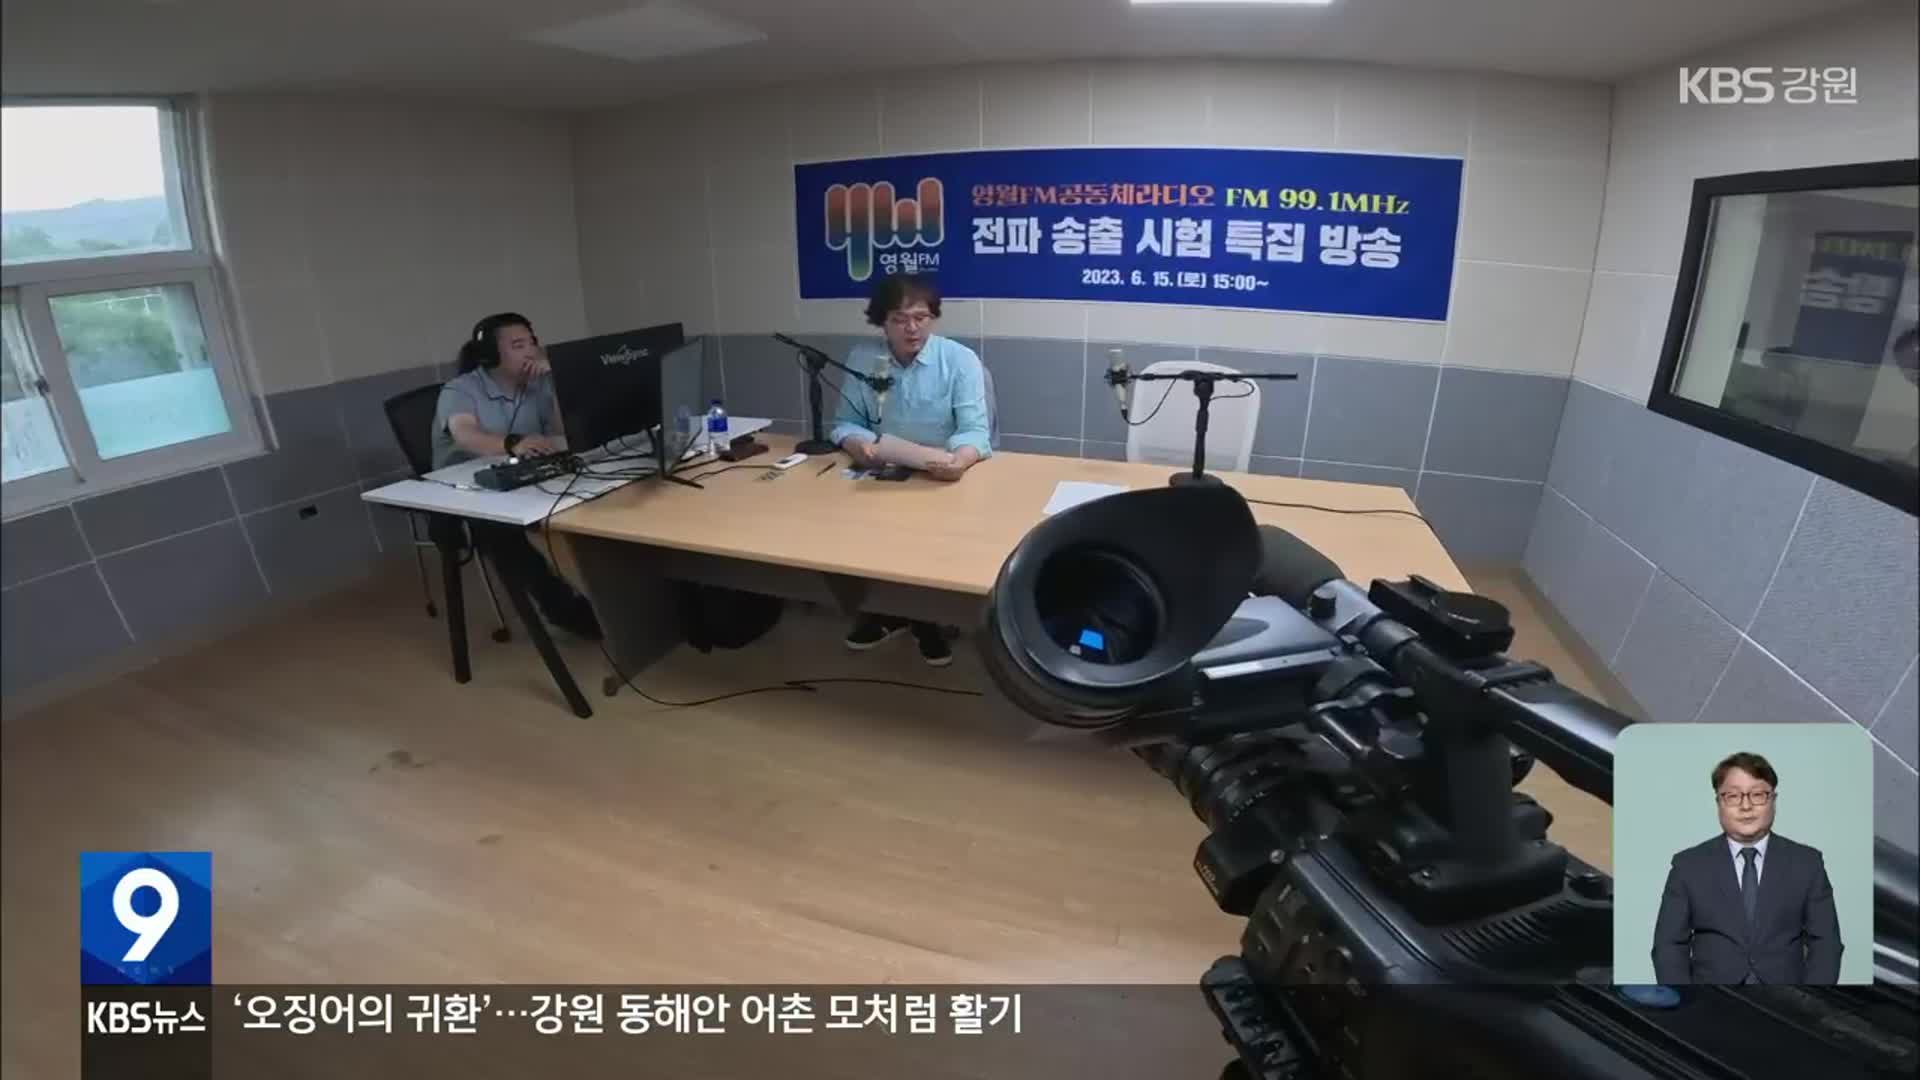 ‘영월FM 공동체라디오’ 첫 시험방송…지역 구심점으로